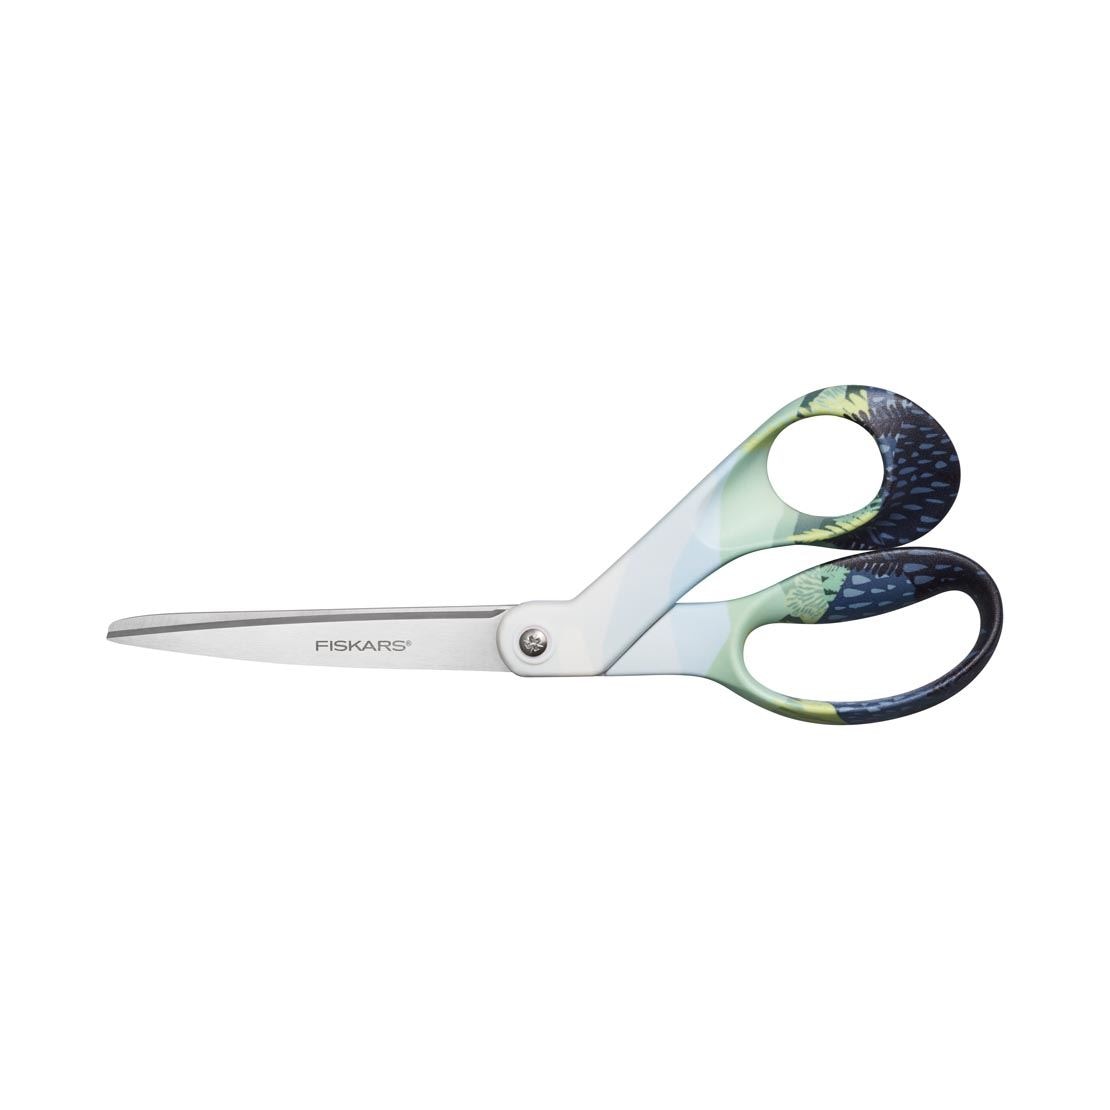 Fiskars 8in Bent Left Handed Scissors